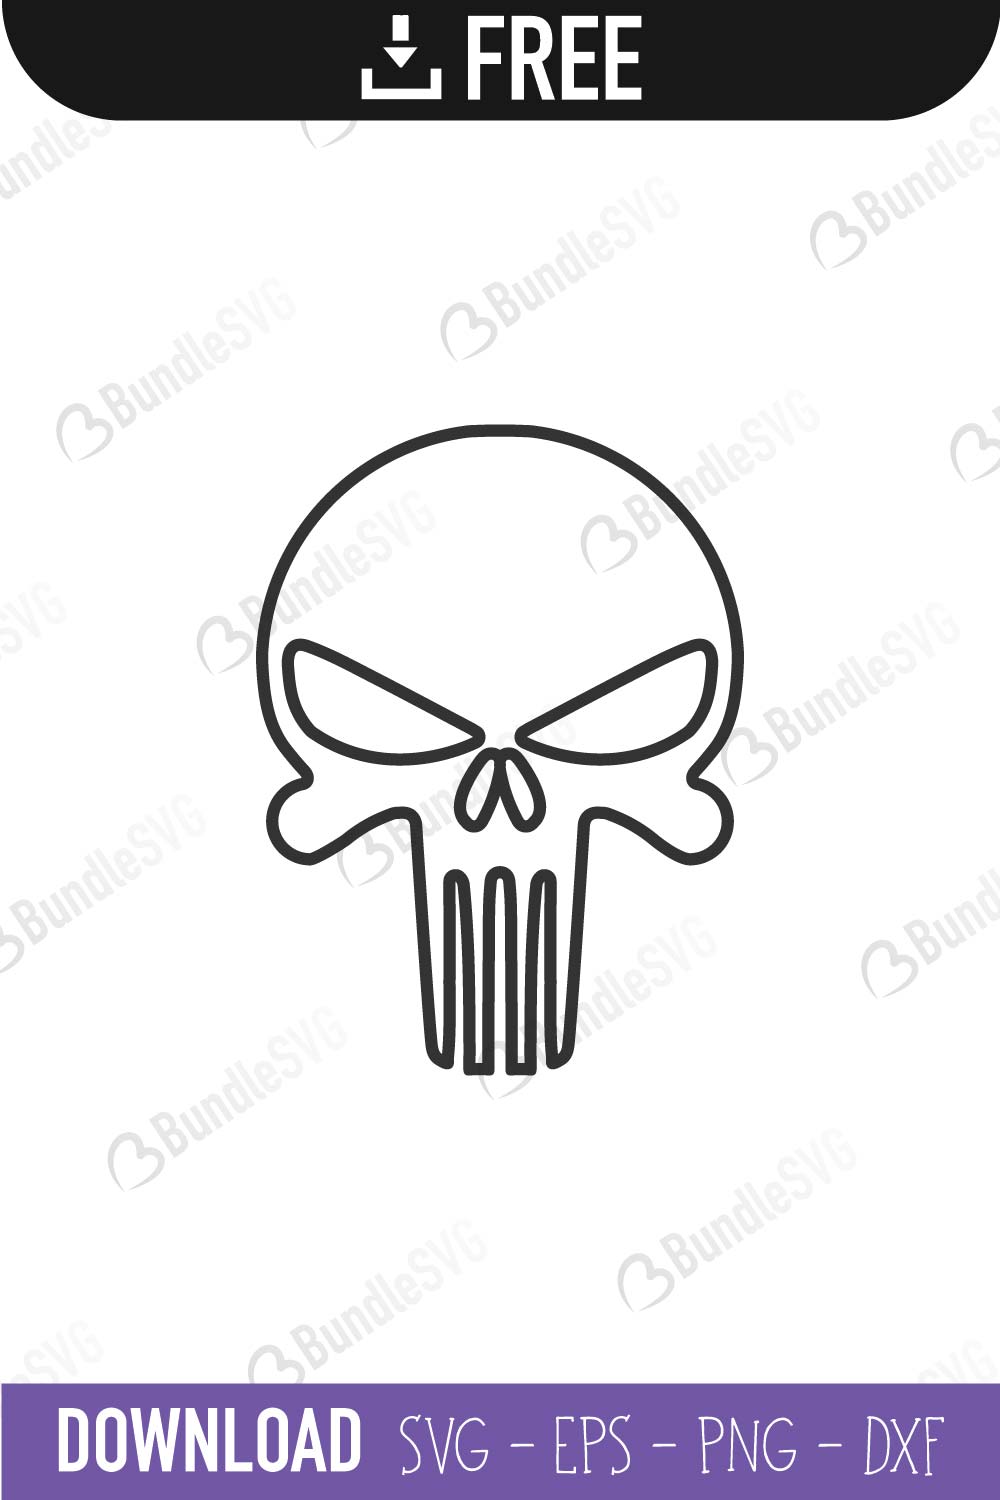 Download Punisher Skull Svg Cut Files Free Download Bundlesvg